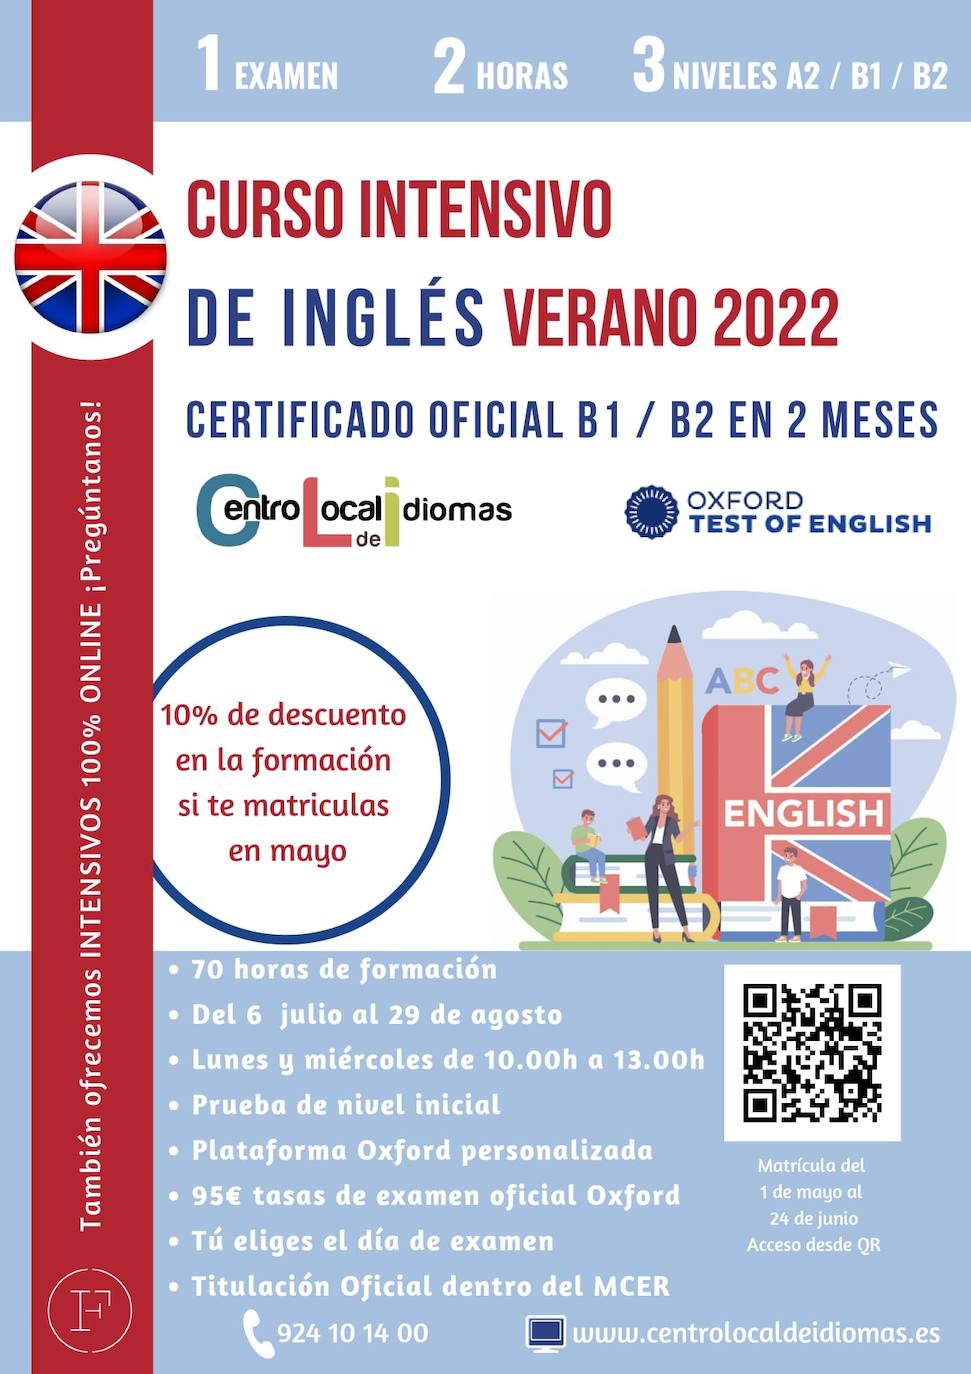 El Centro Local de Idiomas oferta dos cursos intensivos de verano de inglés B1 y B2